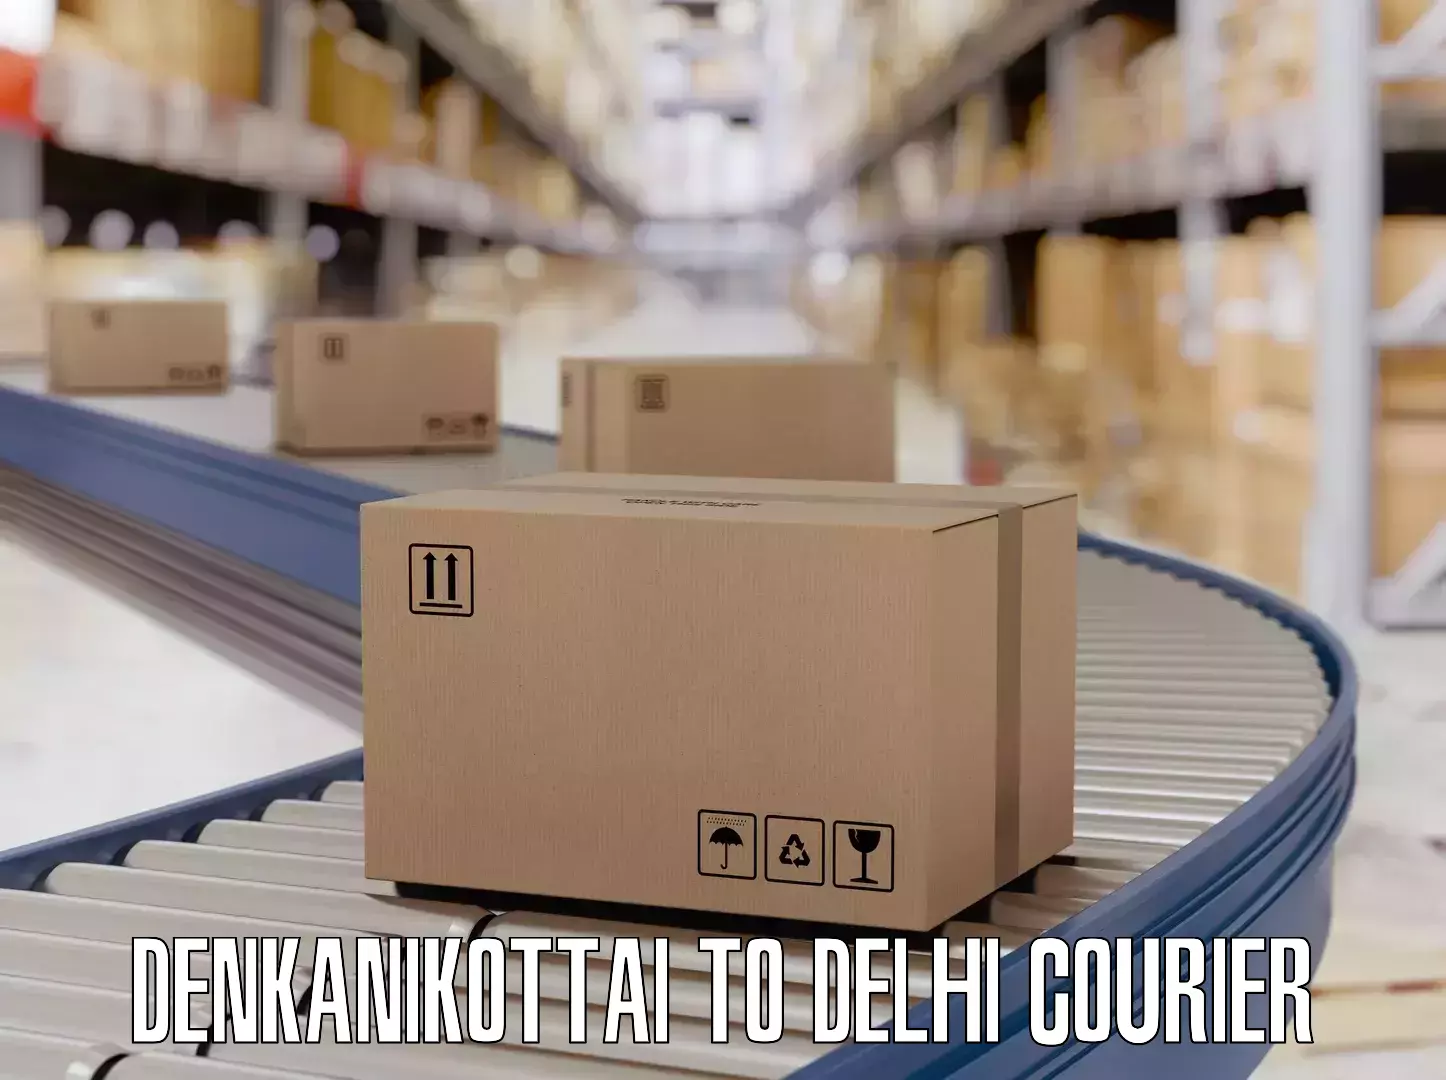 Nationwide luggage courier Denkanikottai to Delhi